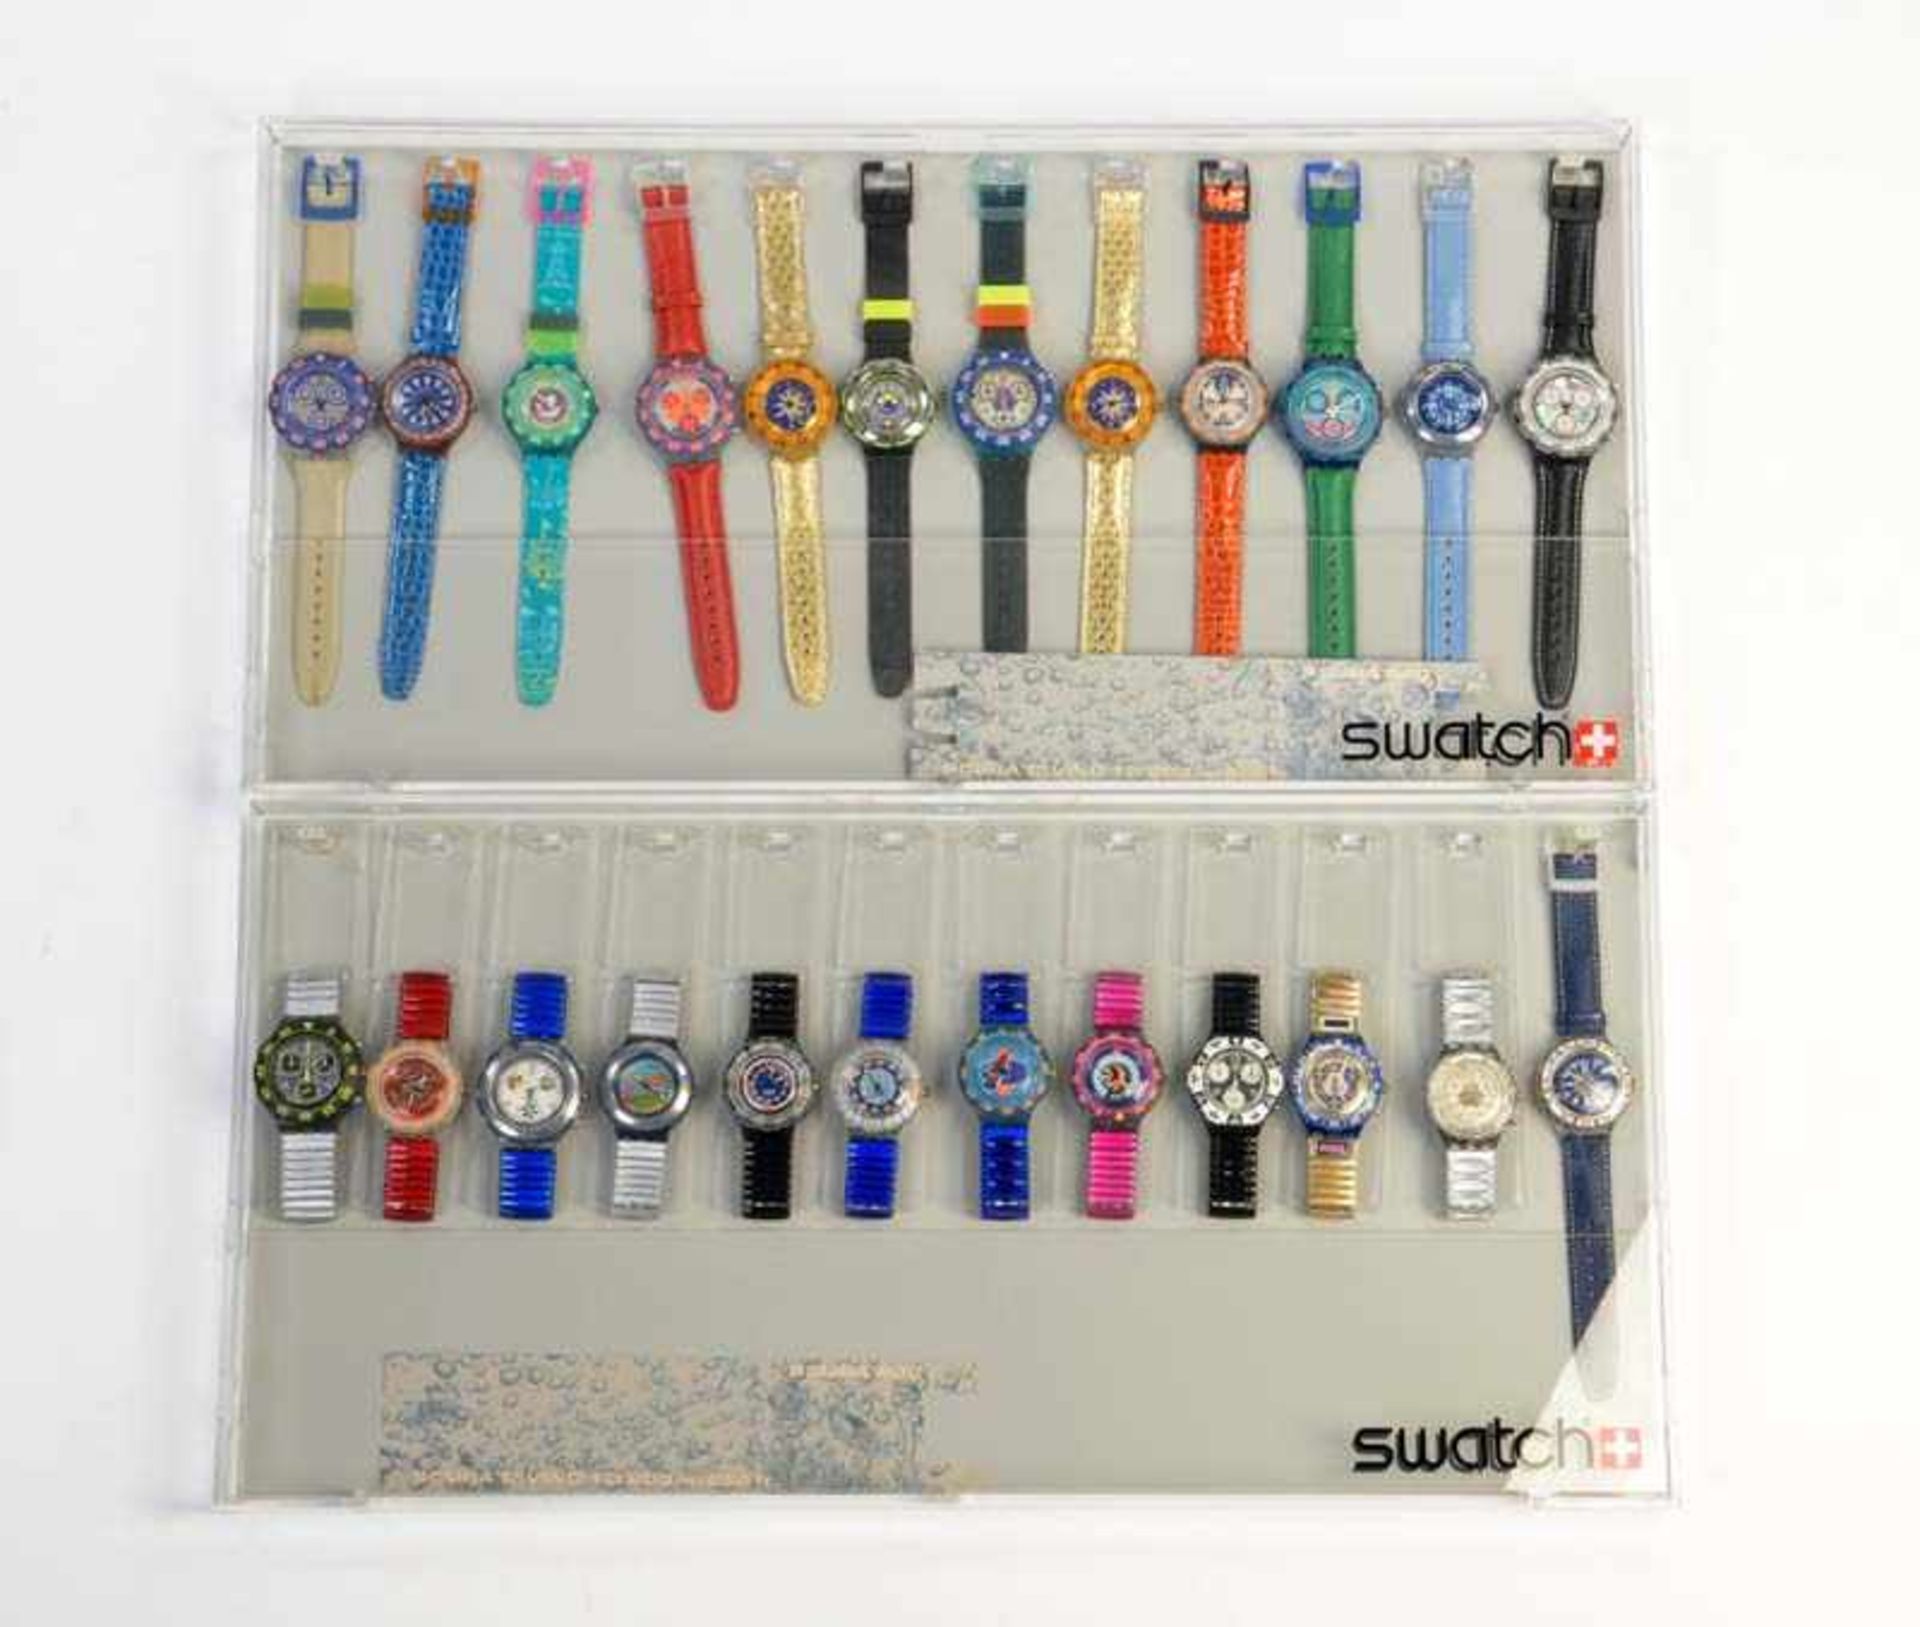 Swatch, 2 Displays mit 24 Uhren, Swiss made, neuwertig Swatch, 2 Displays with 24 Watches, Swiss